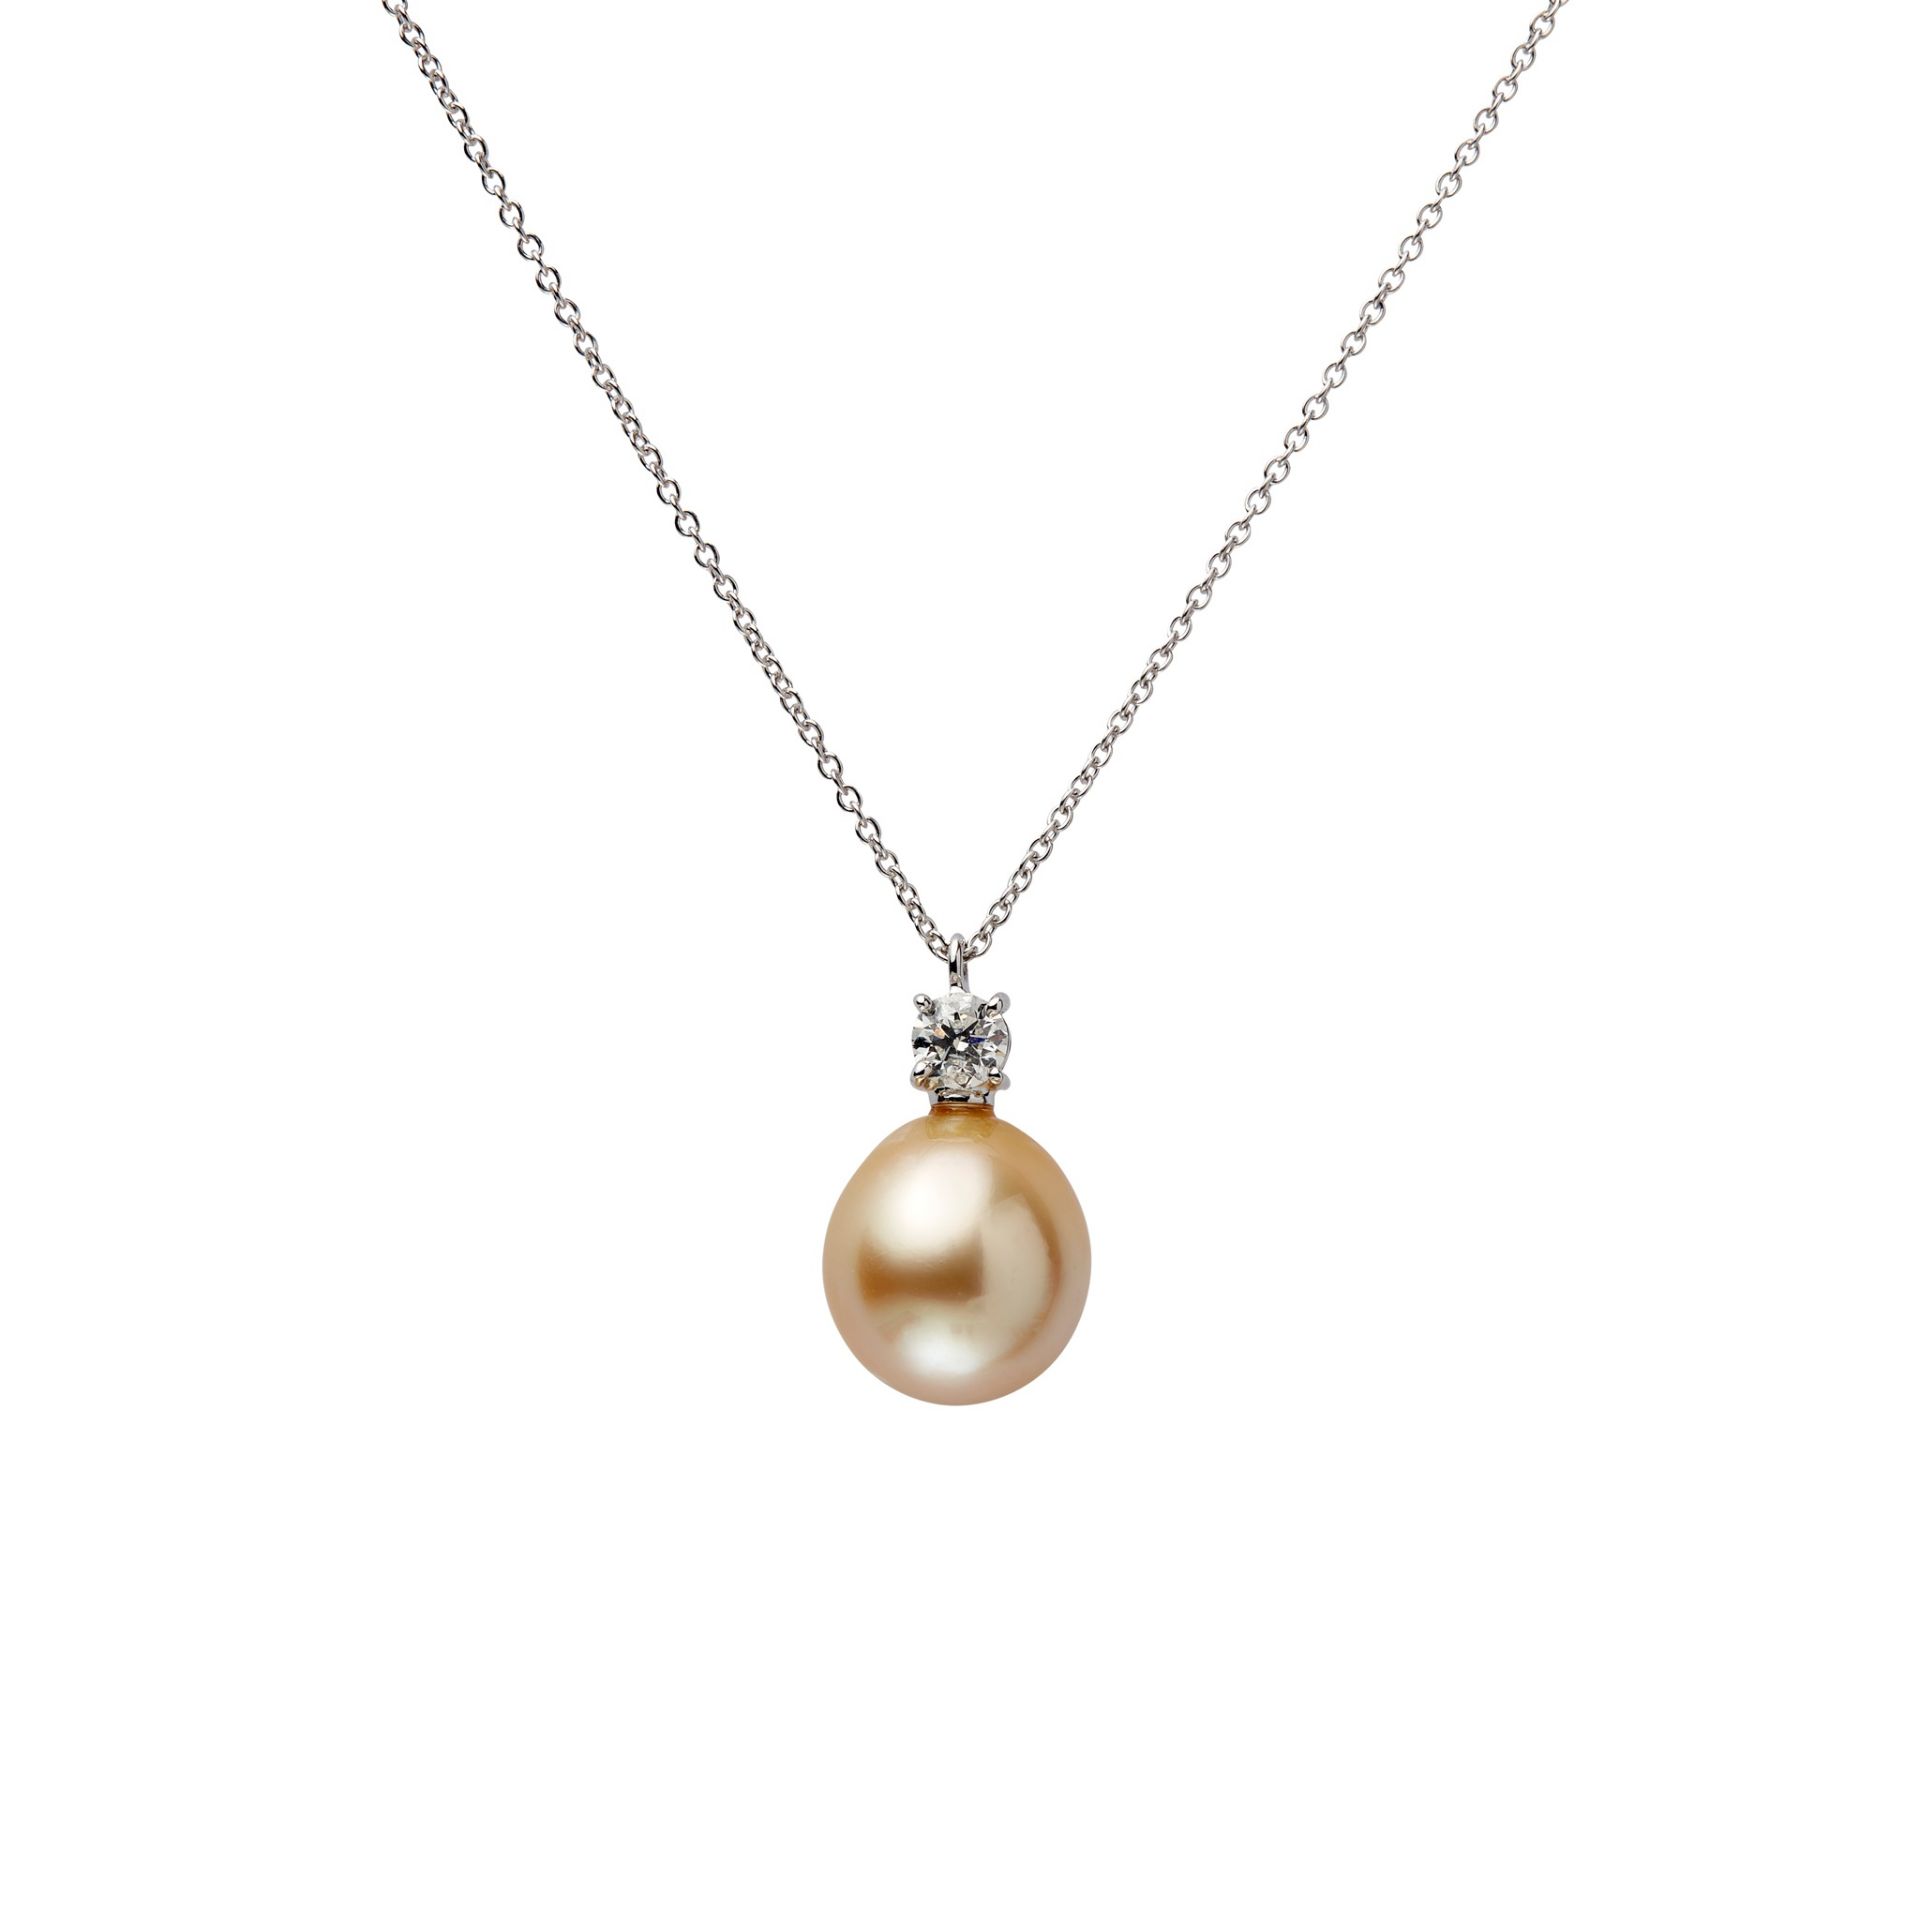 A South Sea pearl and diamond pendant